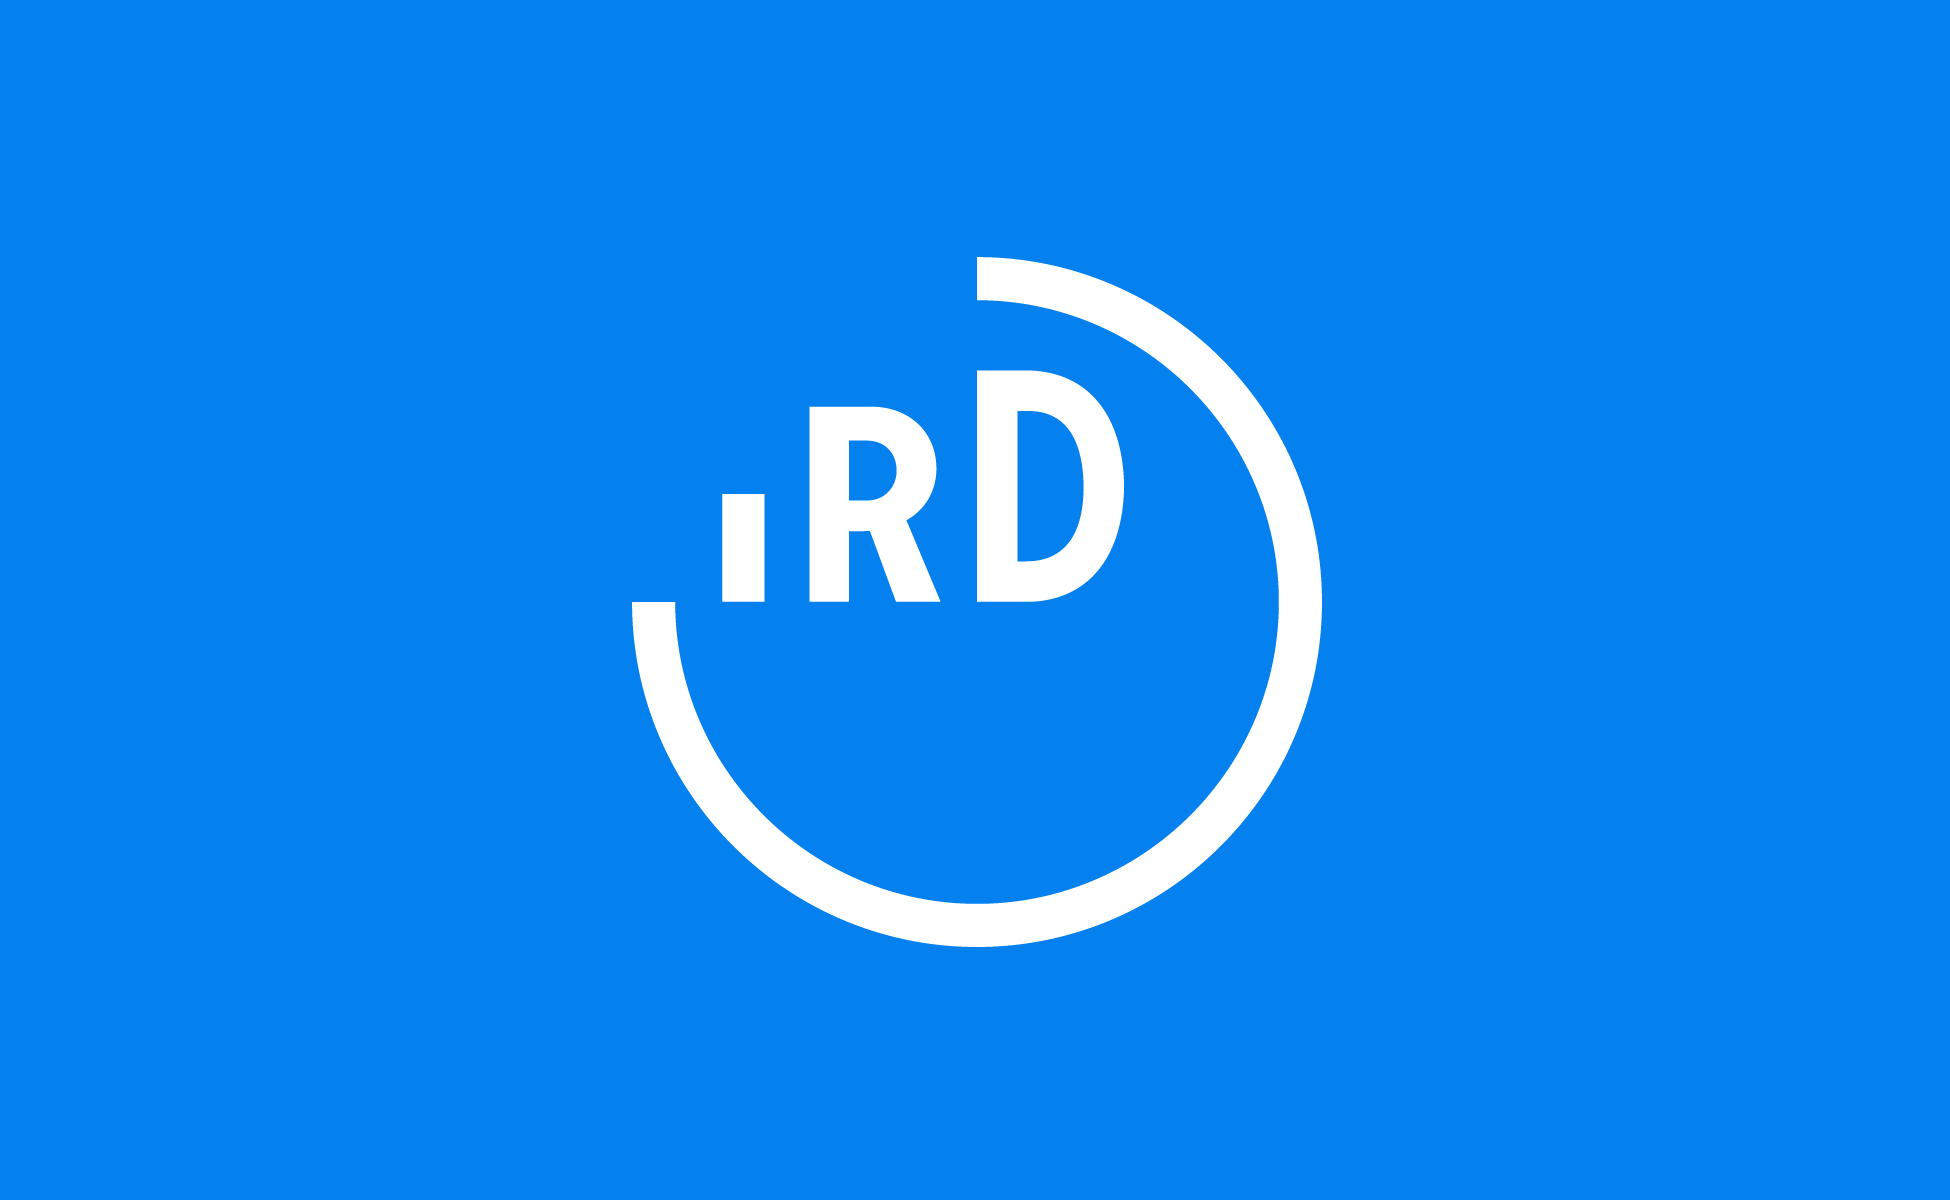 Communication recherche Institut de recherche logo planète